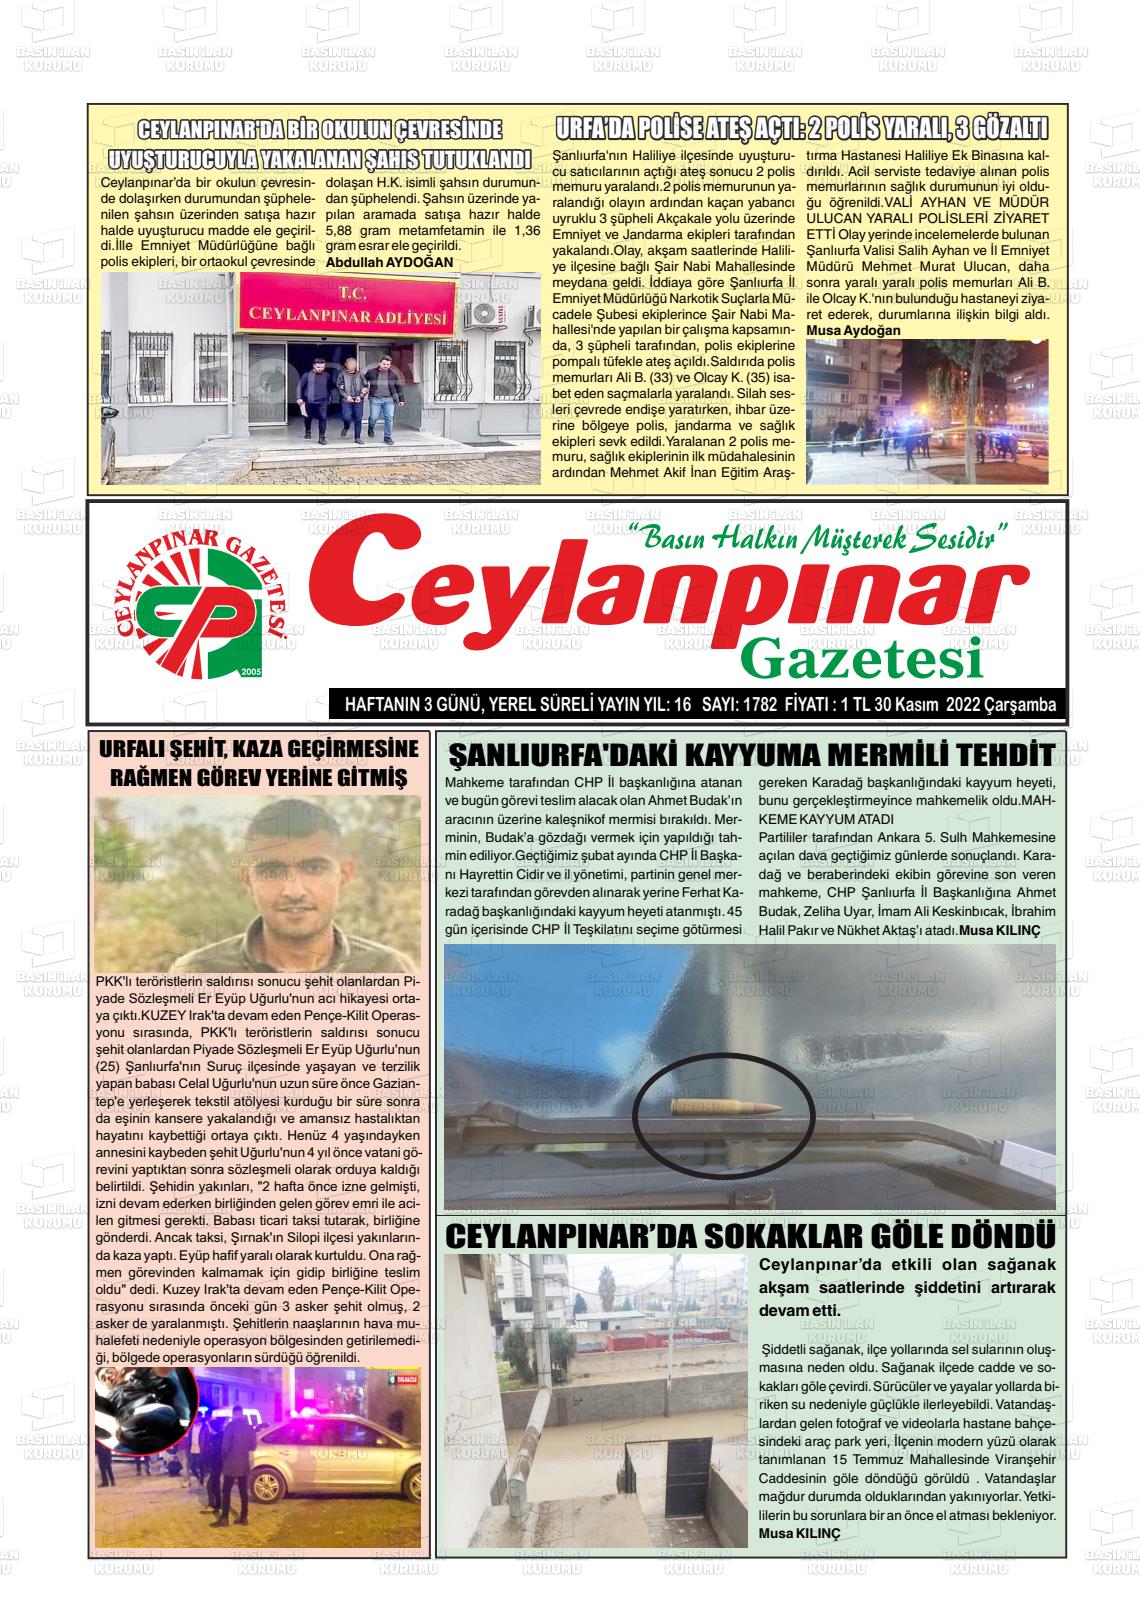 30 Kasım 2022 Ceylanpınar Gazete Manşeti